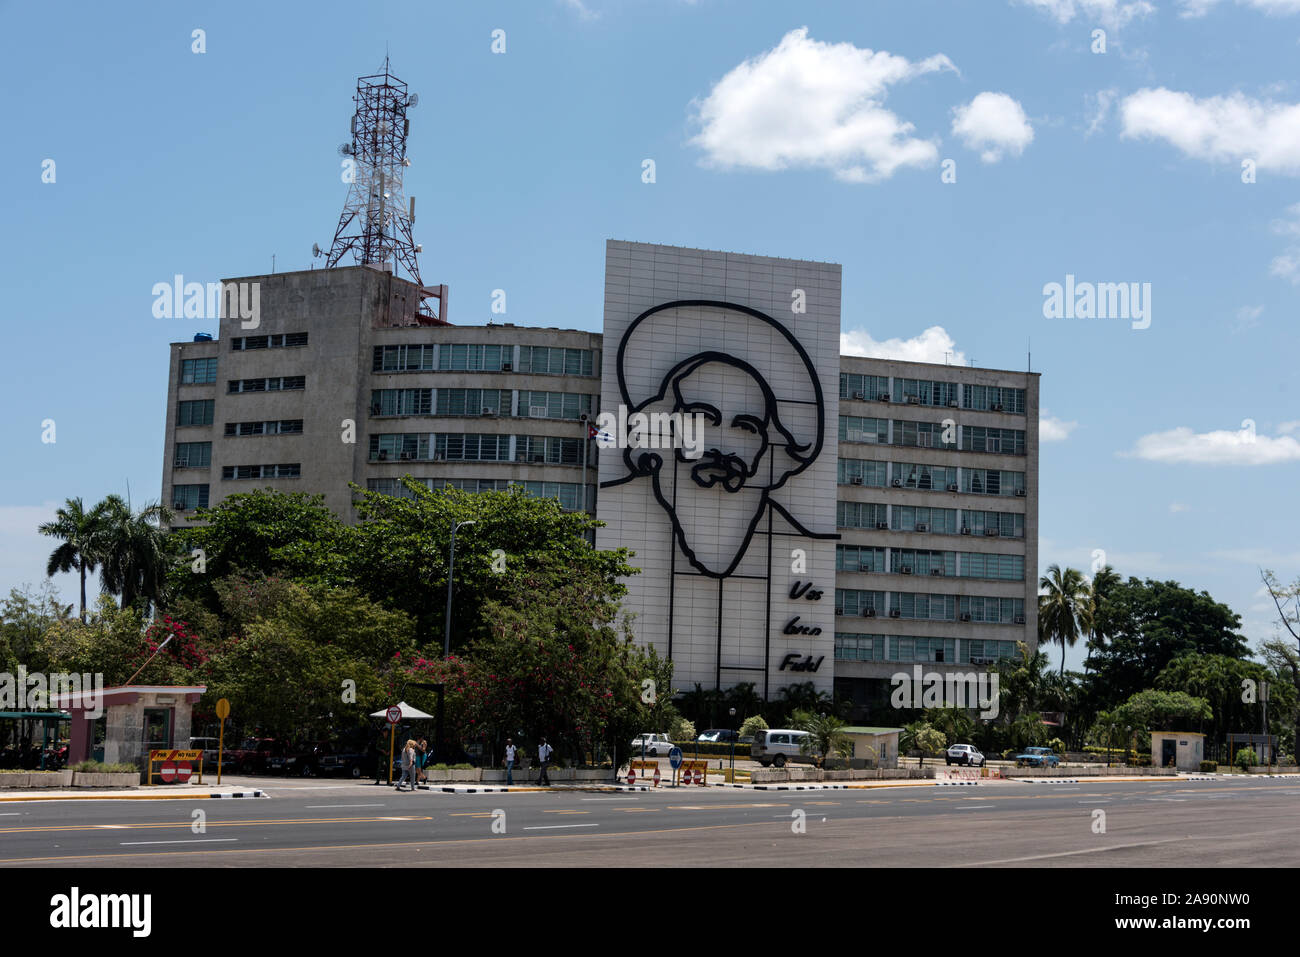 Sur le mur du ministère cubain des Communications - Cubano Ministerio de Comunicaciones, se trouve un grand portrait du leader de la Révolution cubaine, Camilo Cien Banque D'Images